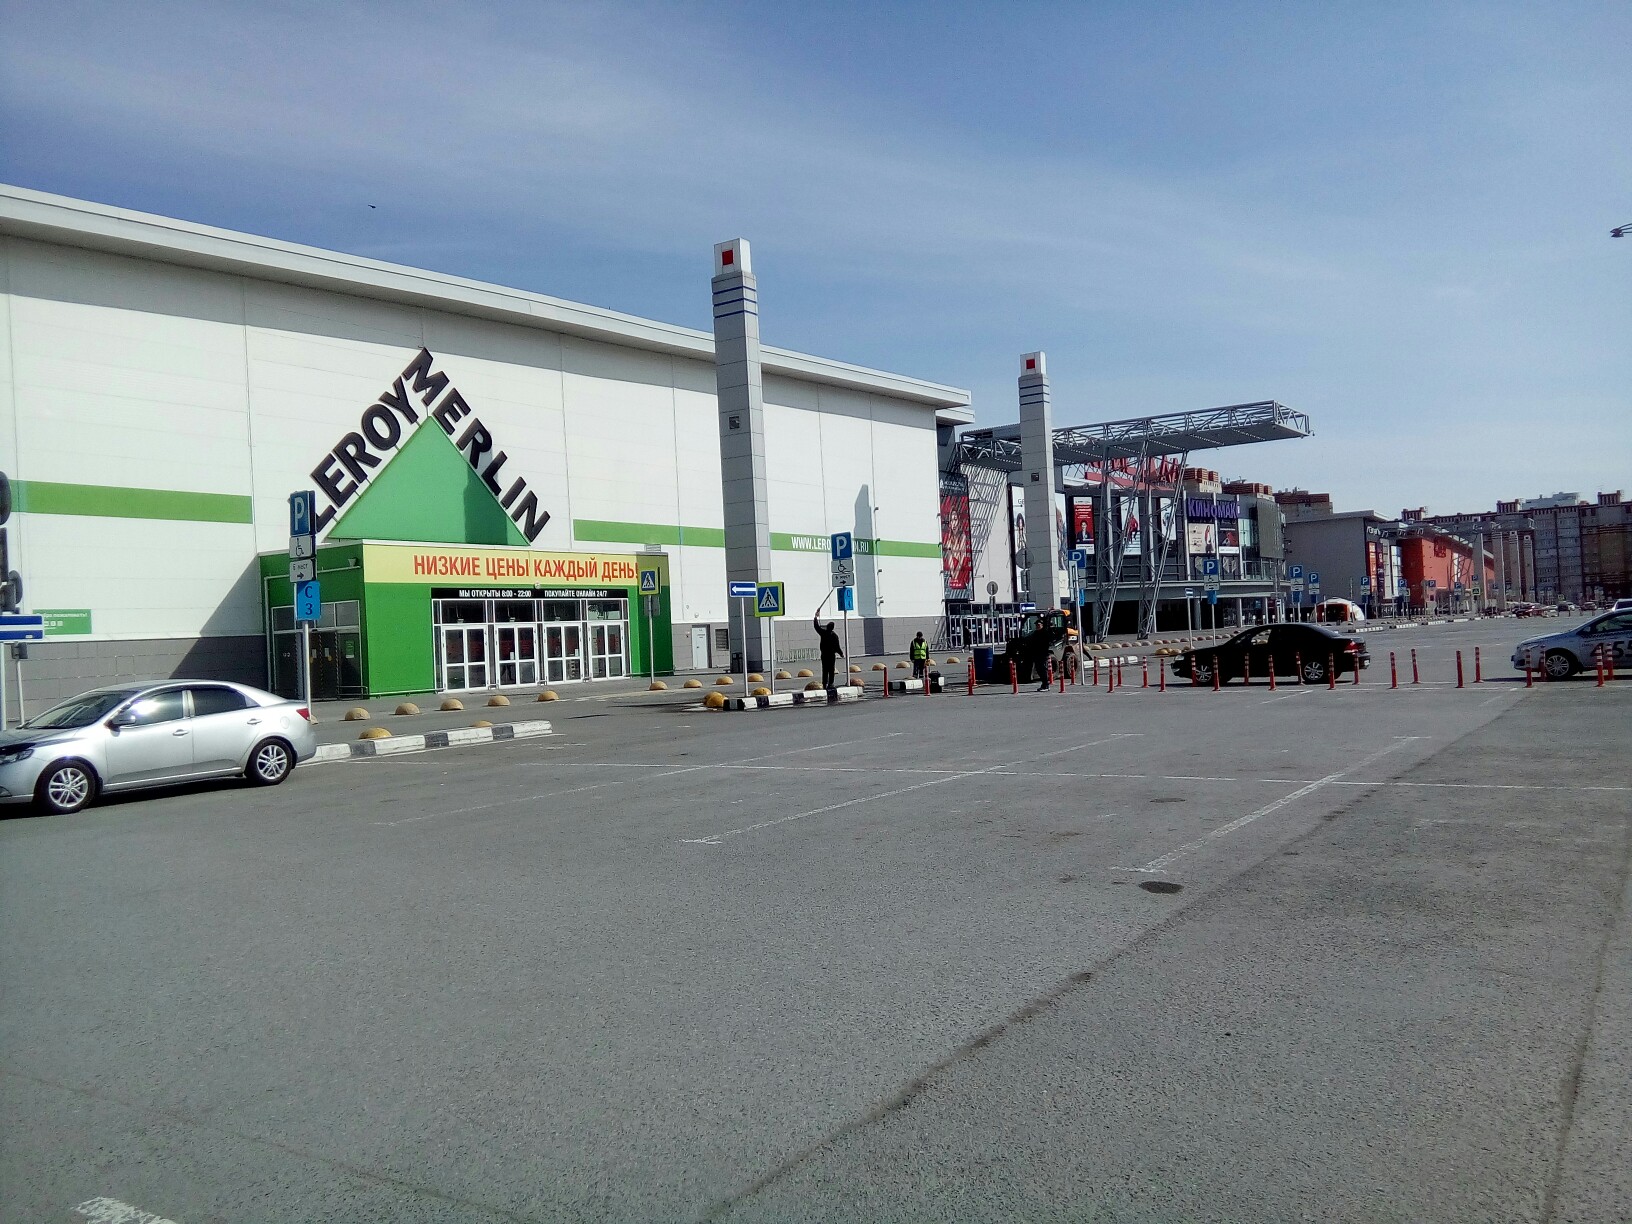 Крупнейший строительный гипермаркет «Леруа Мерлен» временно закрылся из-за коронавируса